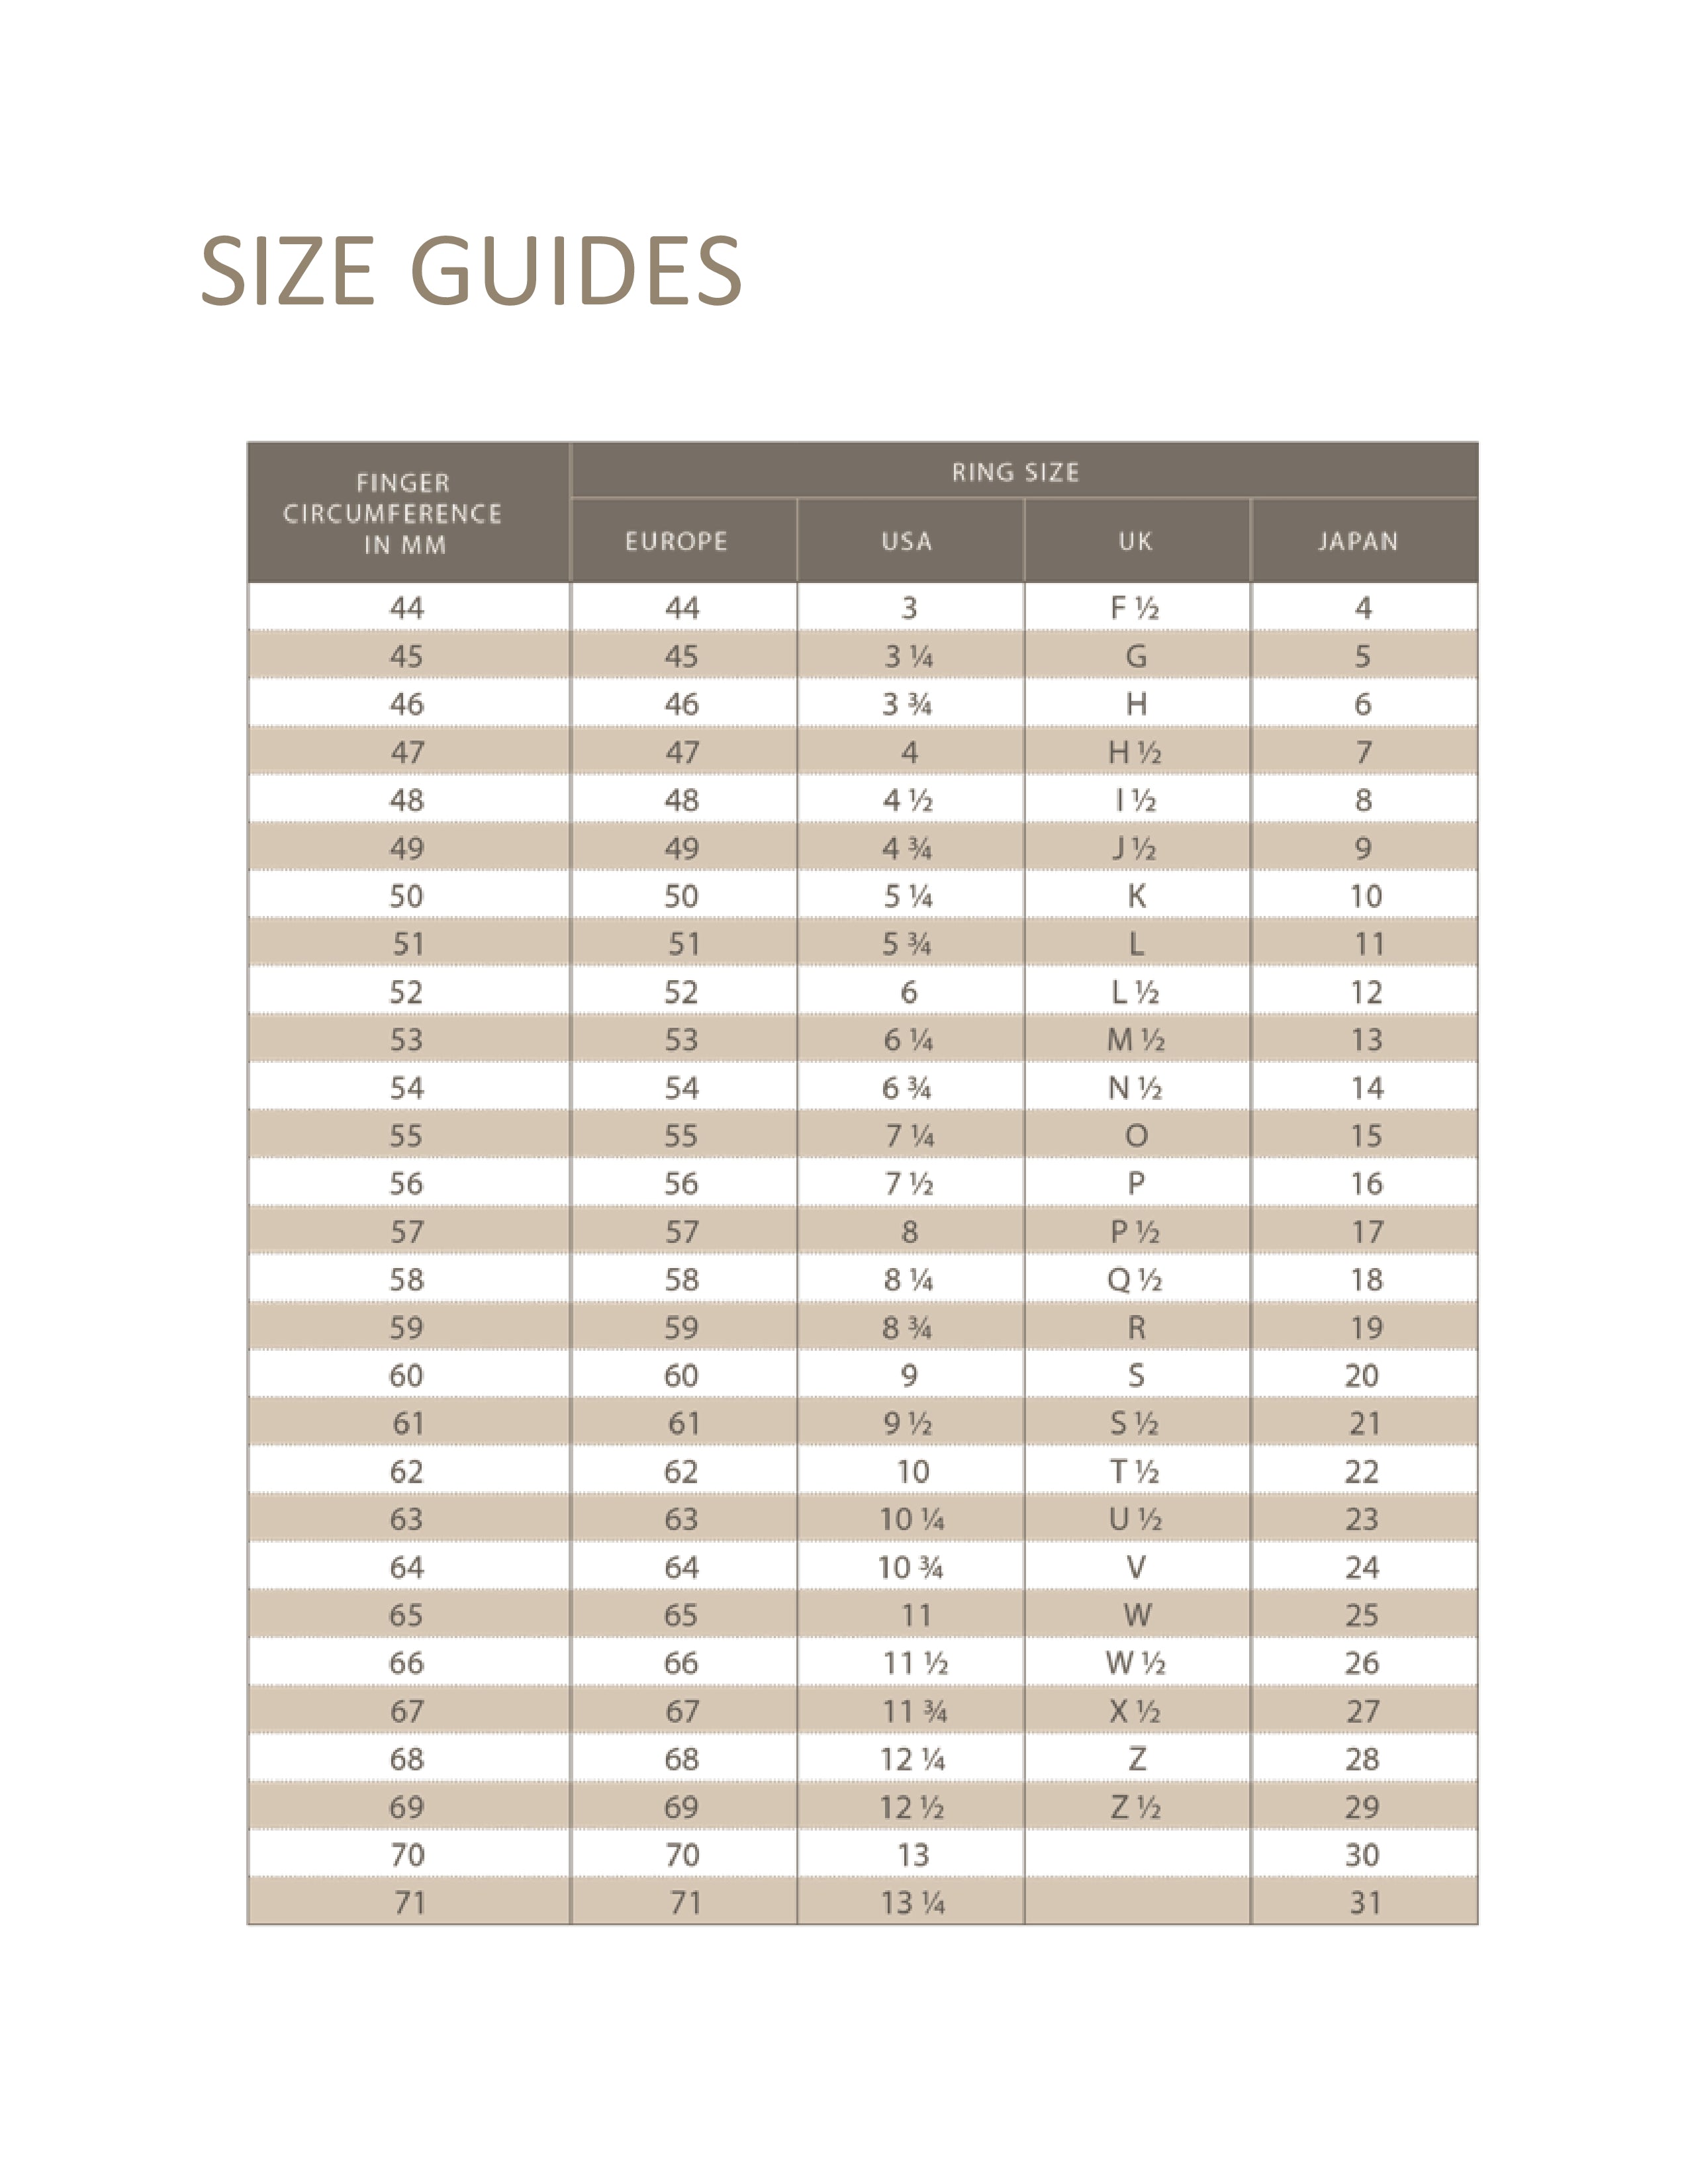 Louis Vuitton Women Shoe Size Guide